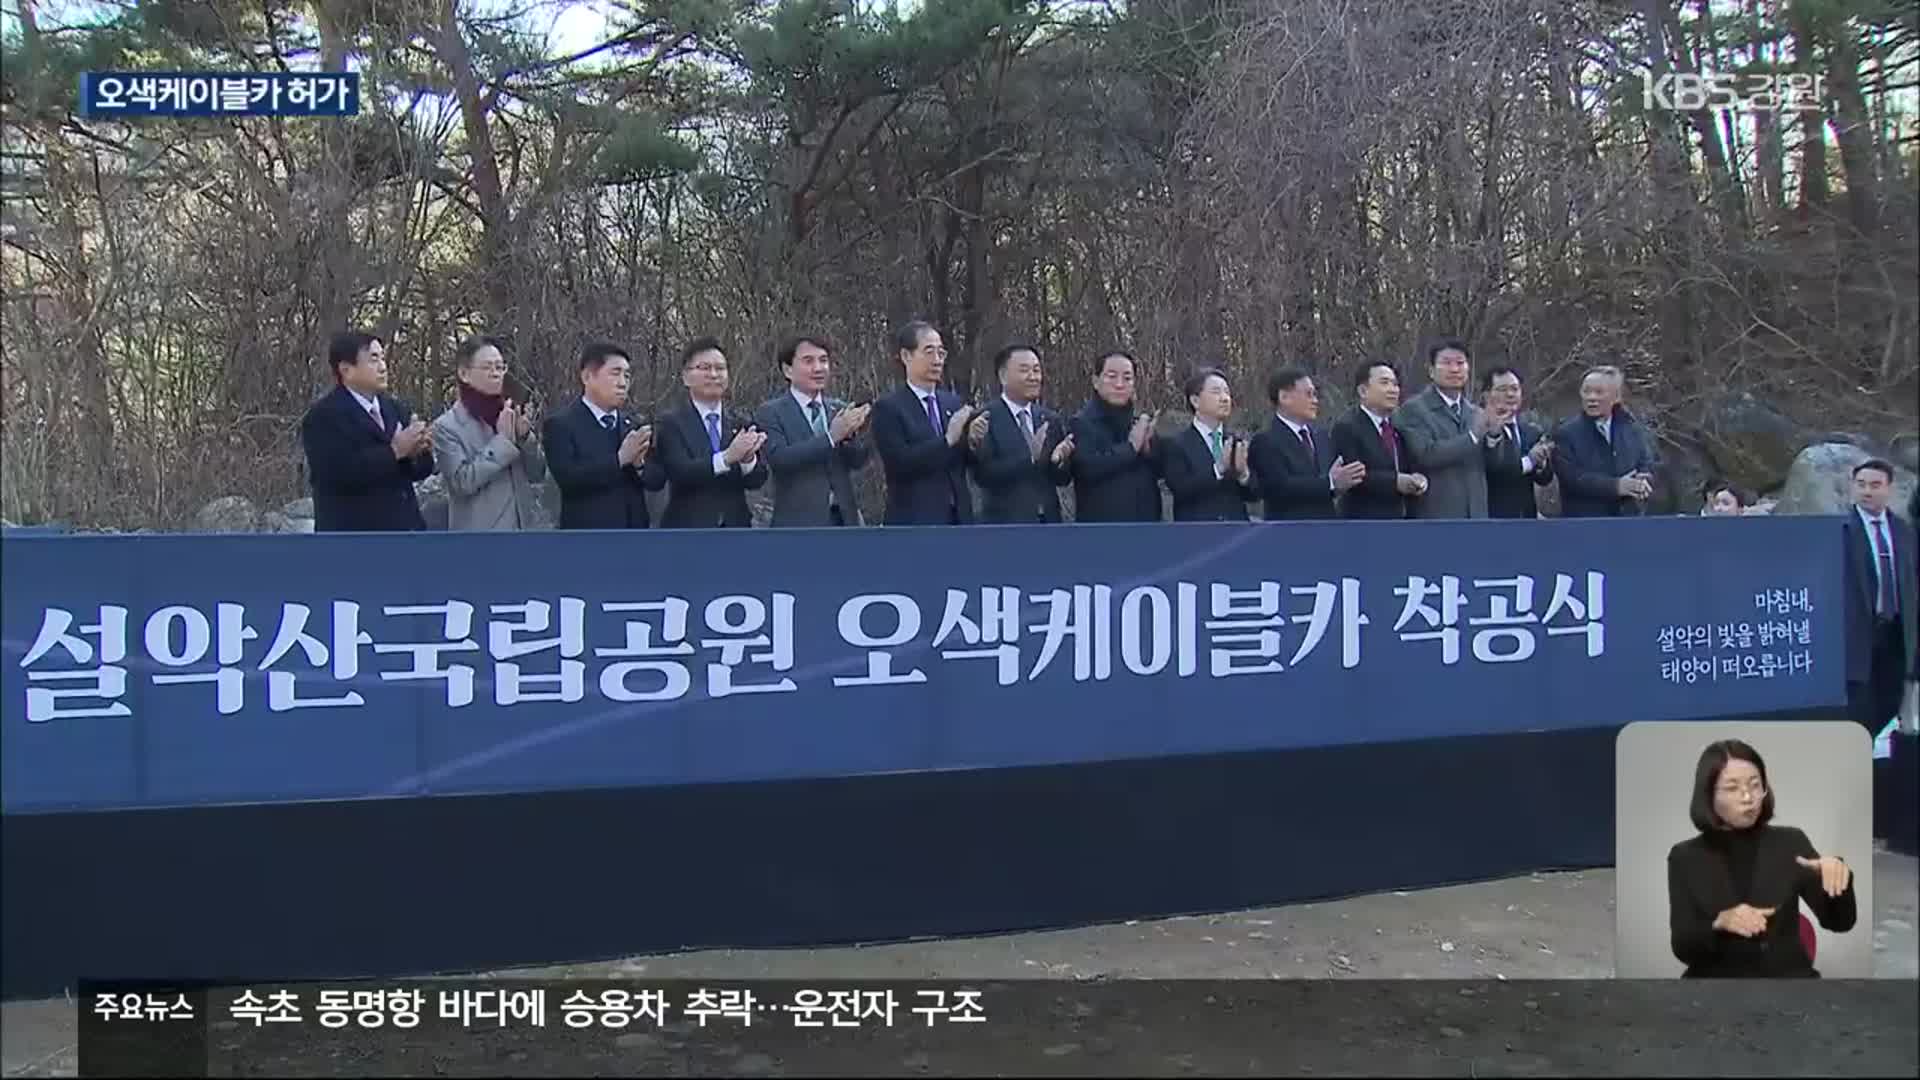 오색케이블카 40여 년 만에 허가, ‘착공식’ 개최